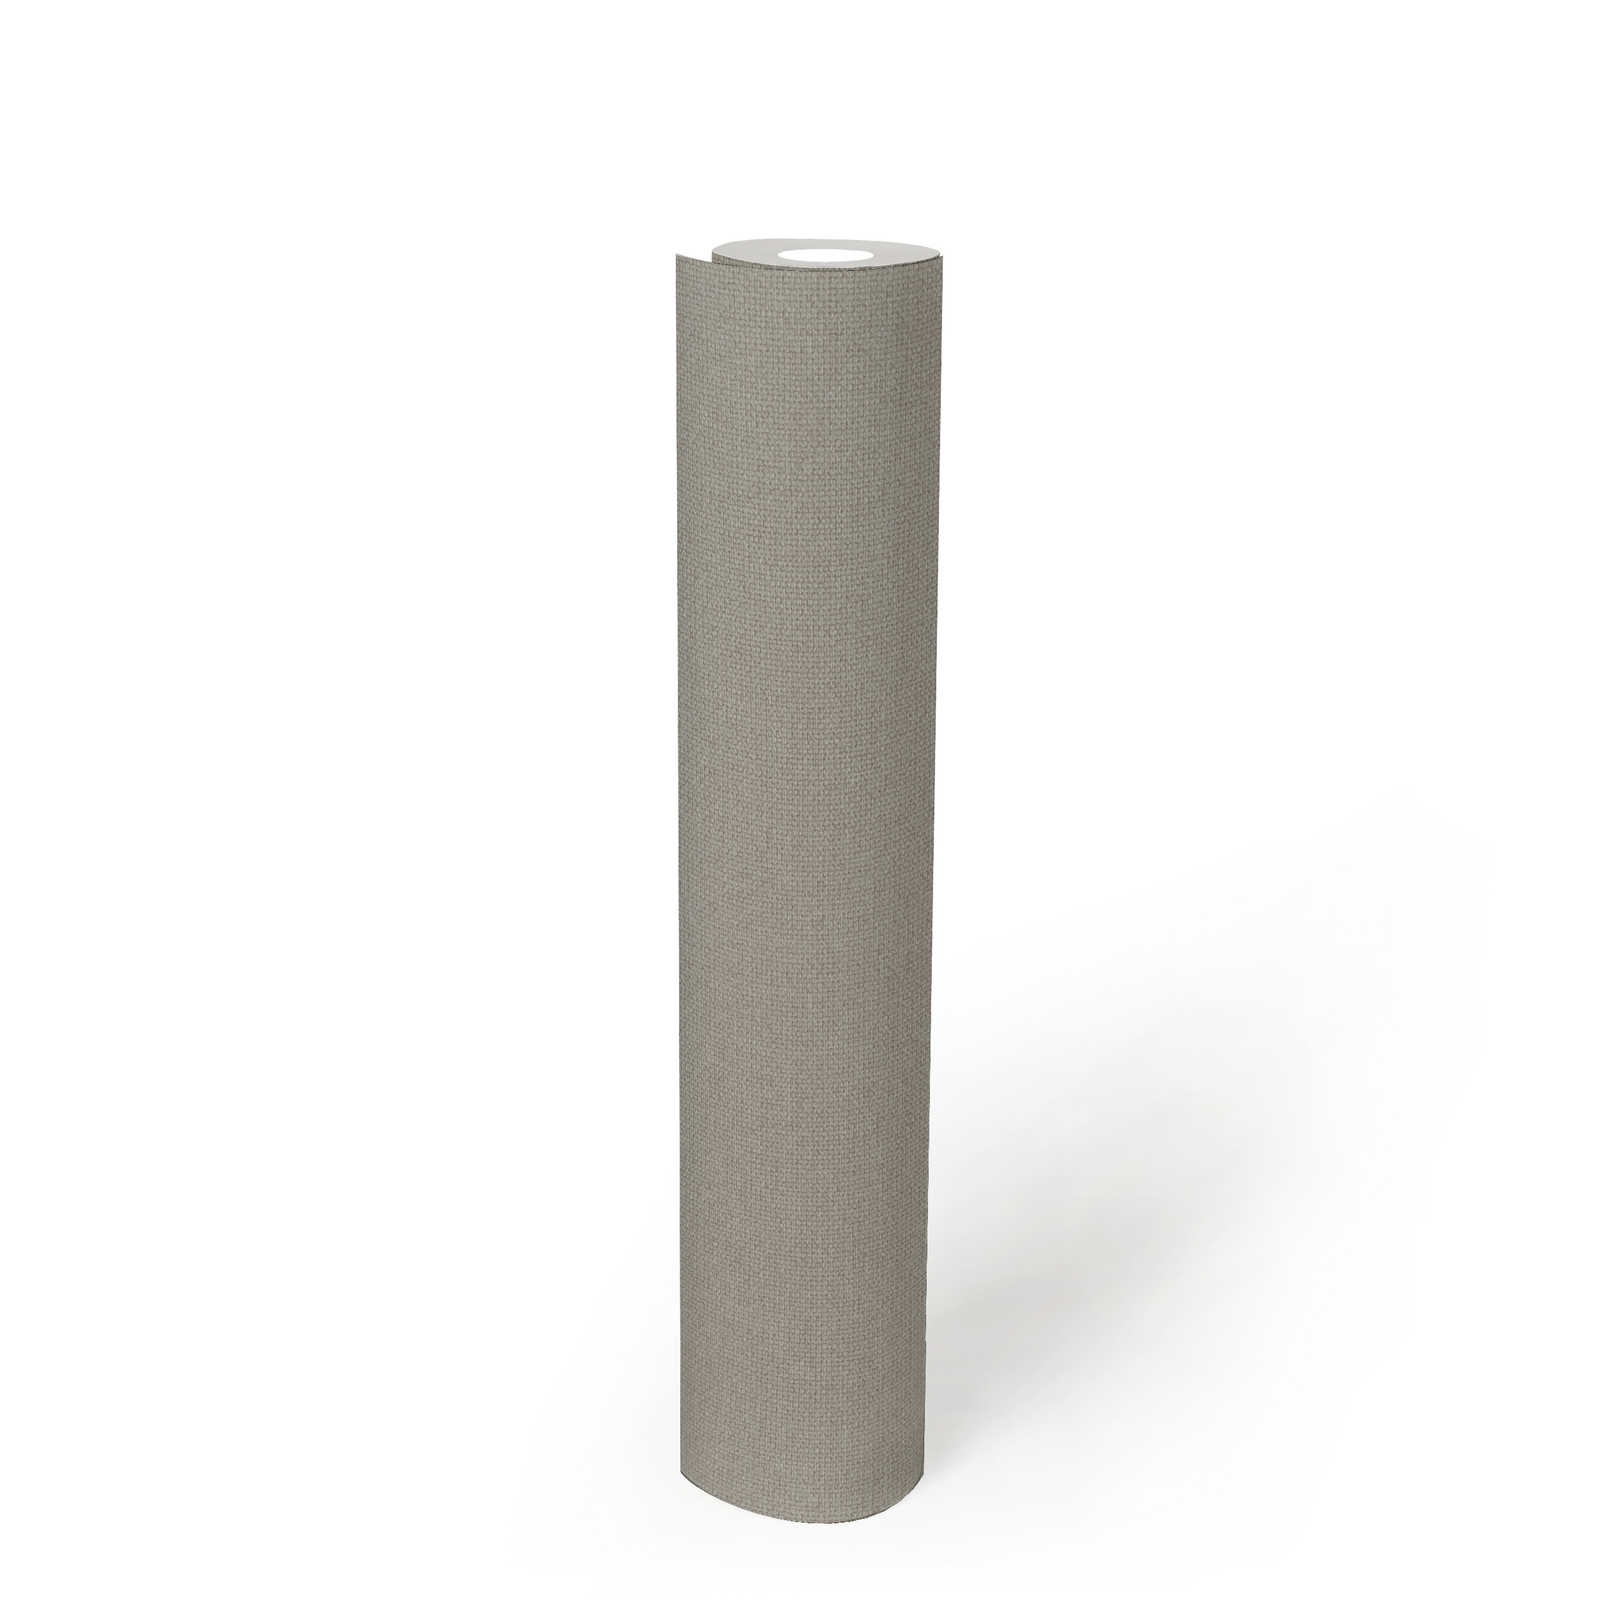             Vliestapete Leinenoptik mit Strukturdetails, einfarbig – Grau, Beige
        